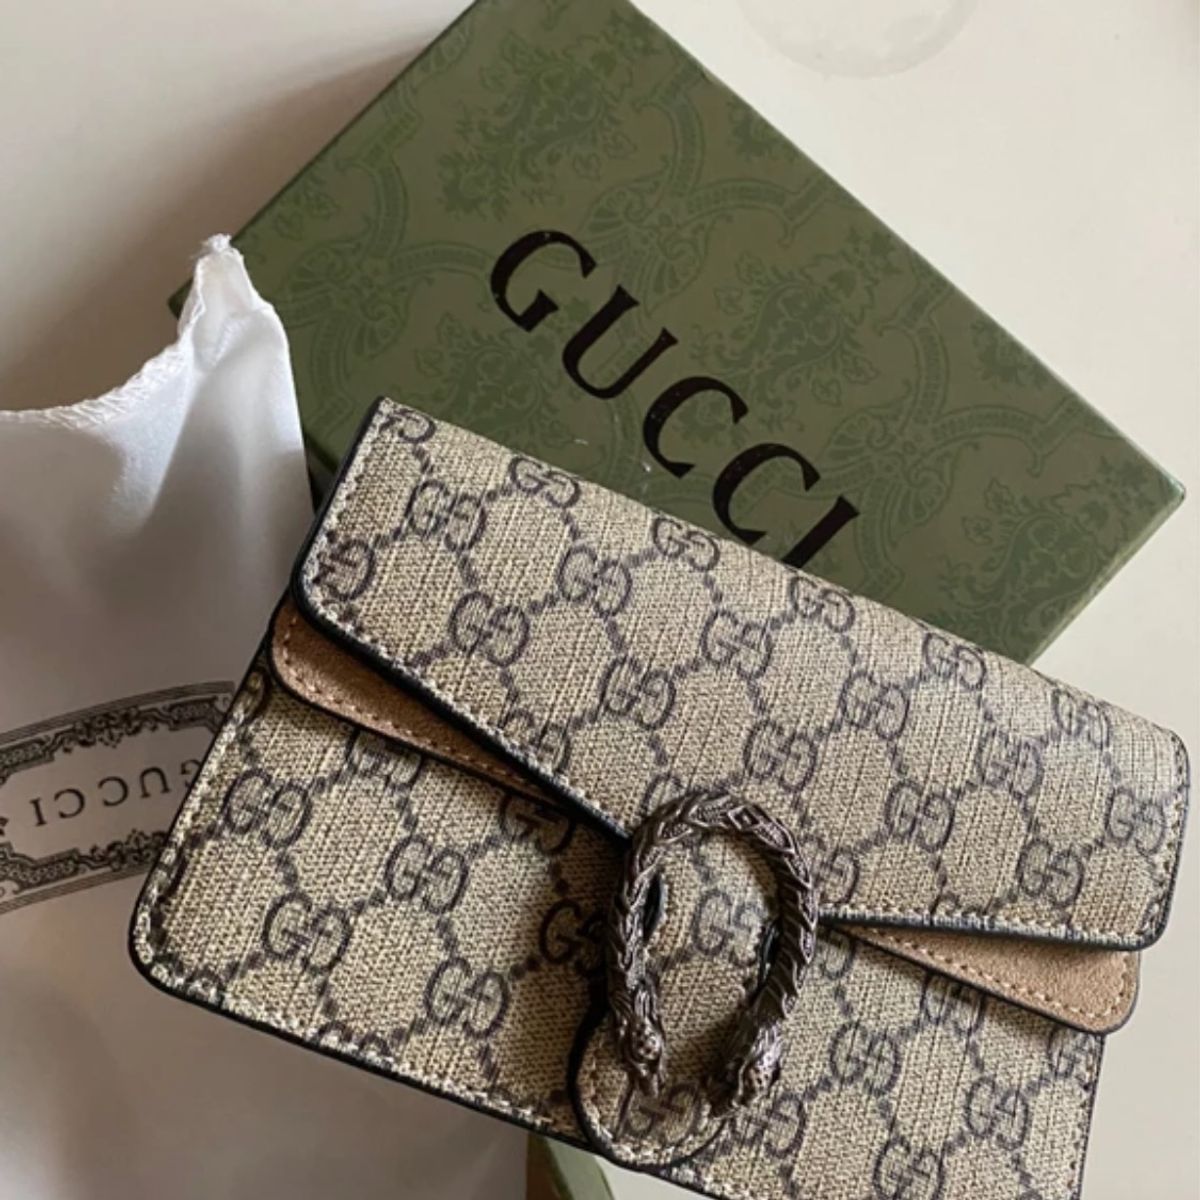 Bolsa Gucci Original com Nota Fiscal e Caixa, Bolsa de Ombro Feminina Gucci  Usado 82286581